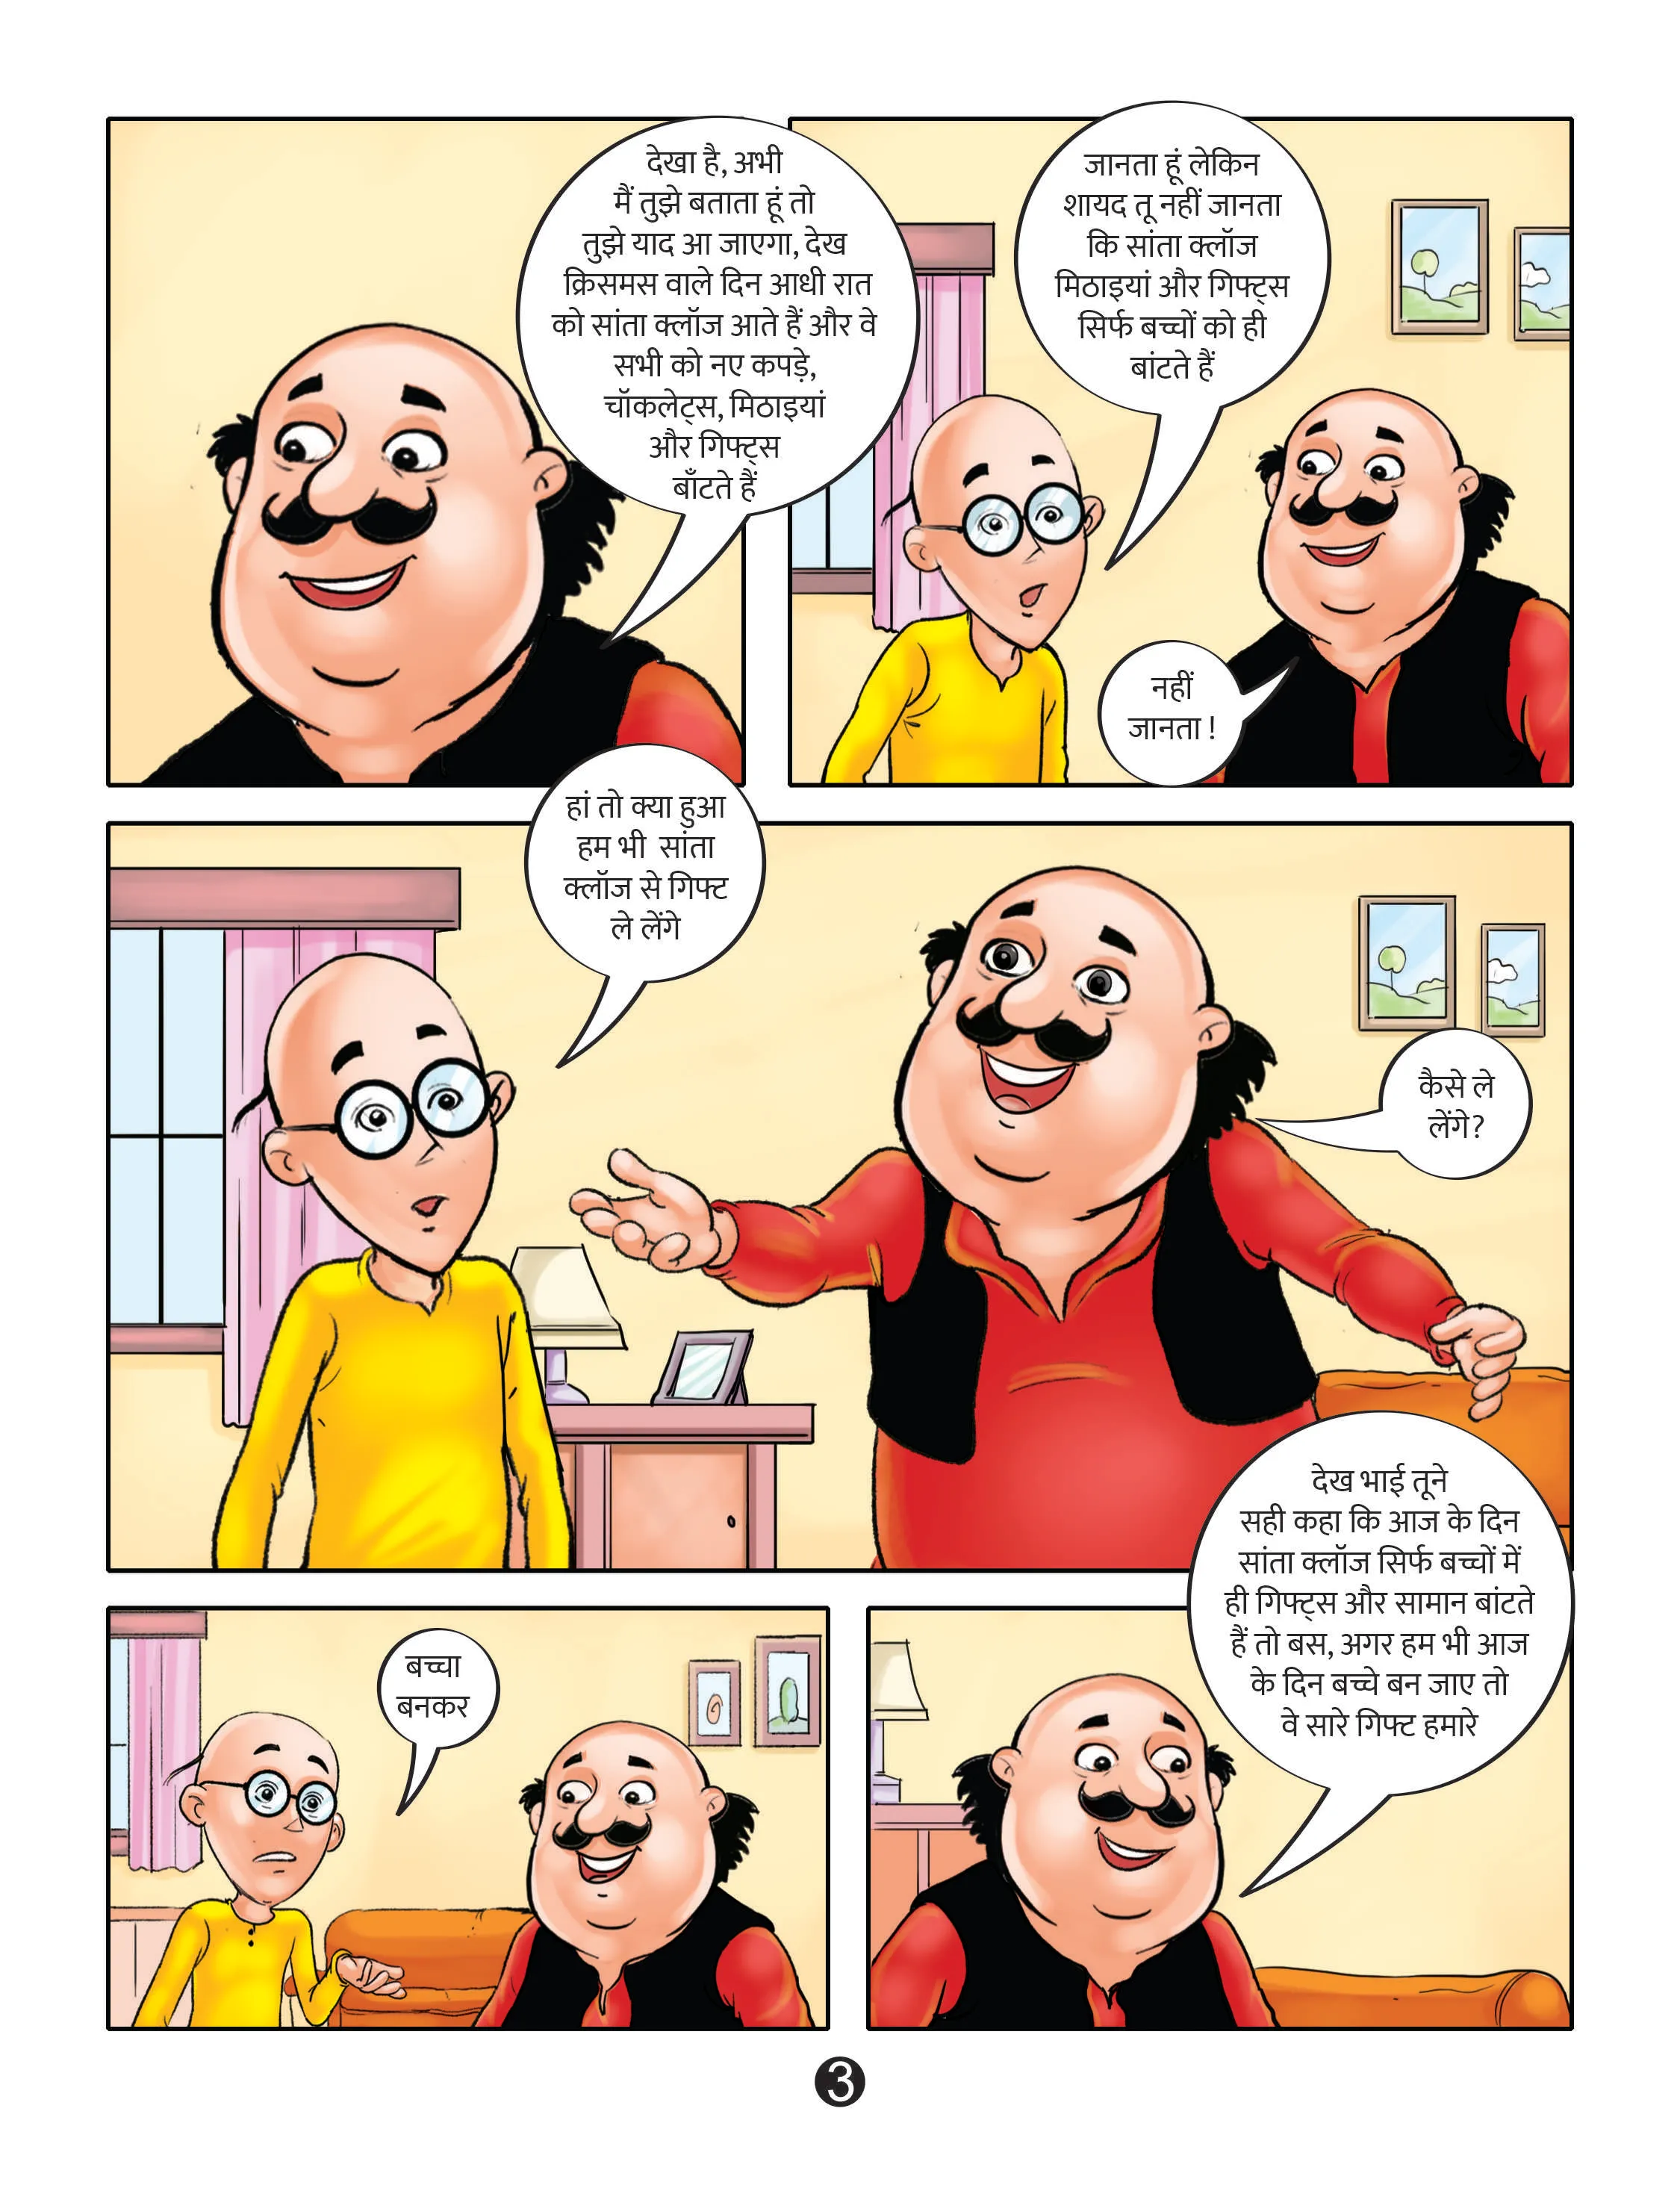 lotpot e-Comics cartoon character motu patlu